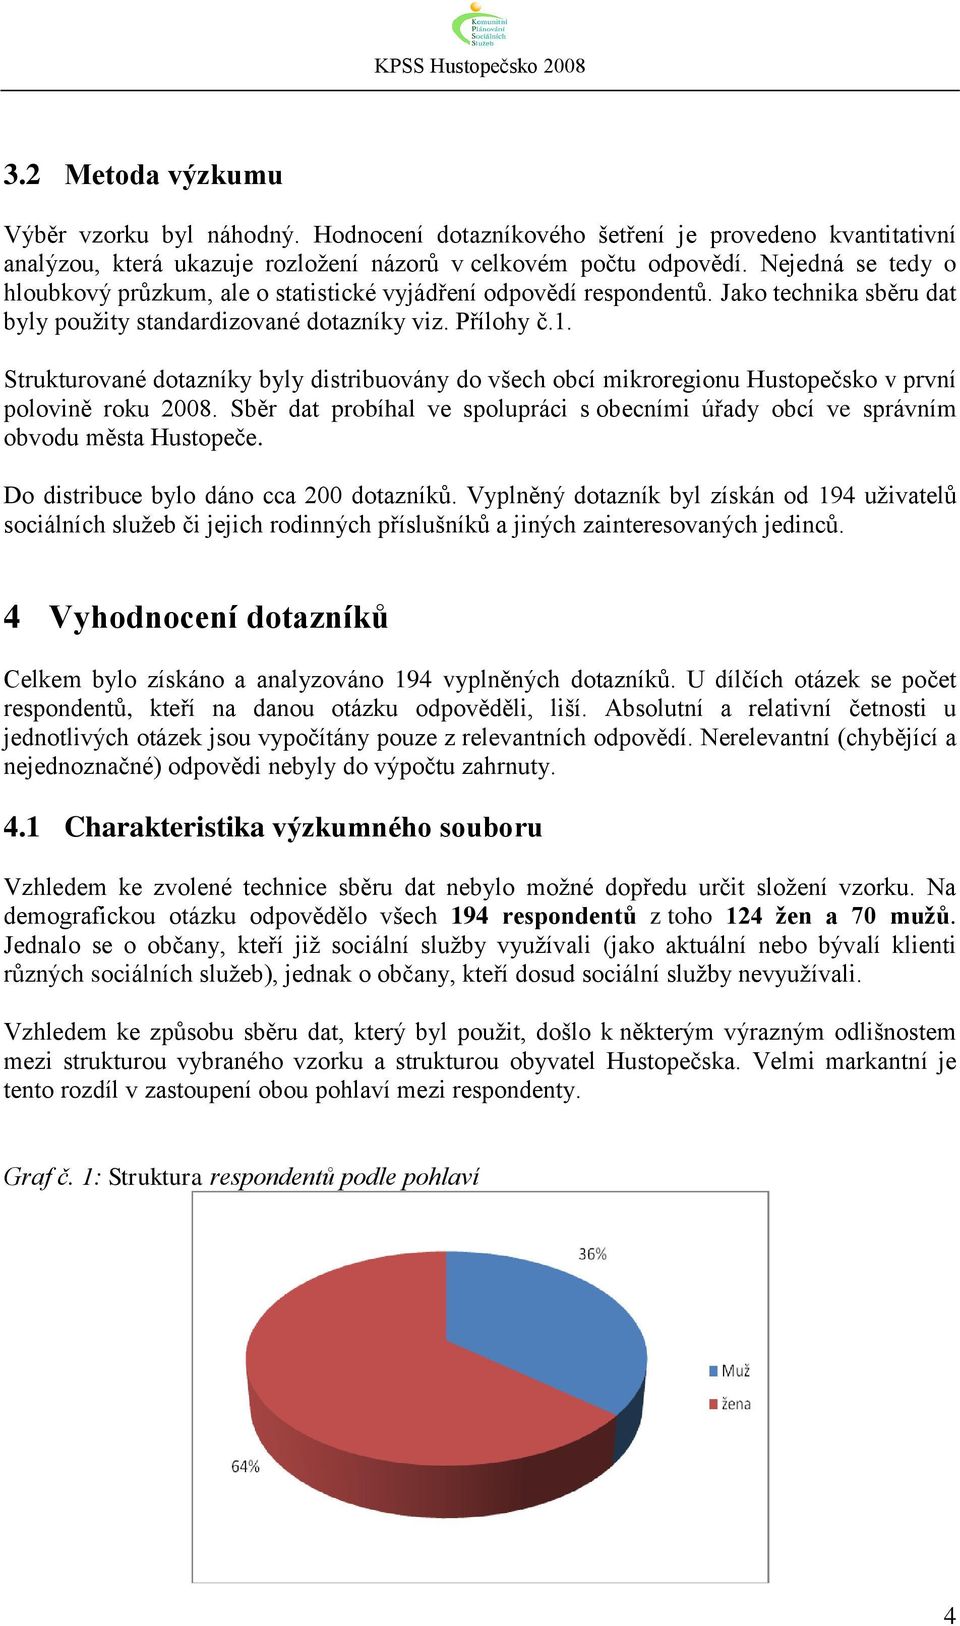 Strukturované dotazníky byly distribuovány do všech obcí mikroregionu Hustopečsko v první polovině roku 2008. Sběr dat probíhal ve spolupráci s obecními úřady obcí ve správním obvodu města Hustopeče.